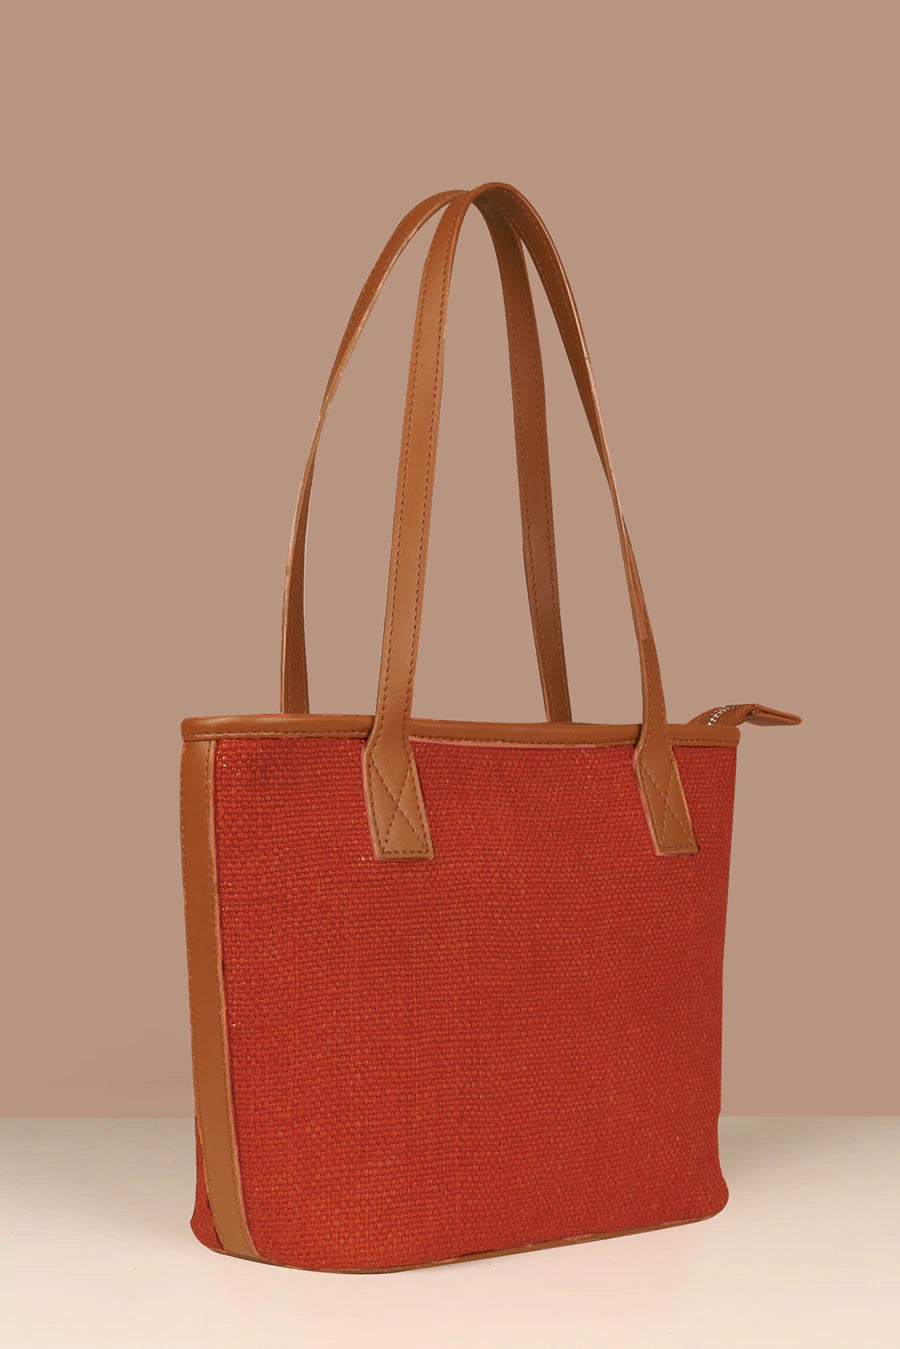 Buy Exotic Women Green Sling Bag Pista Online @ Best Price in India |  Flipkart.com